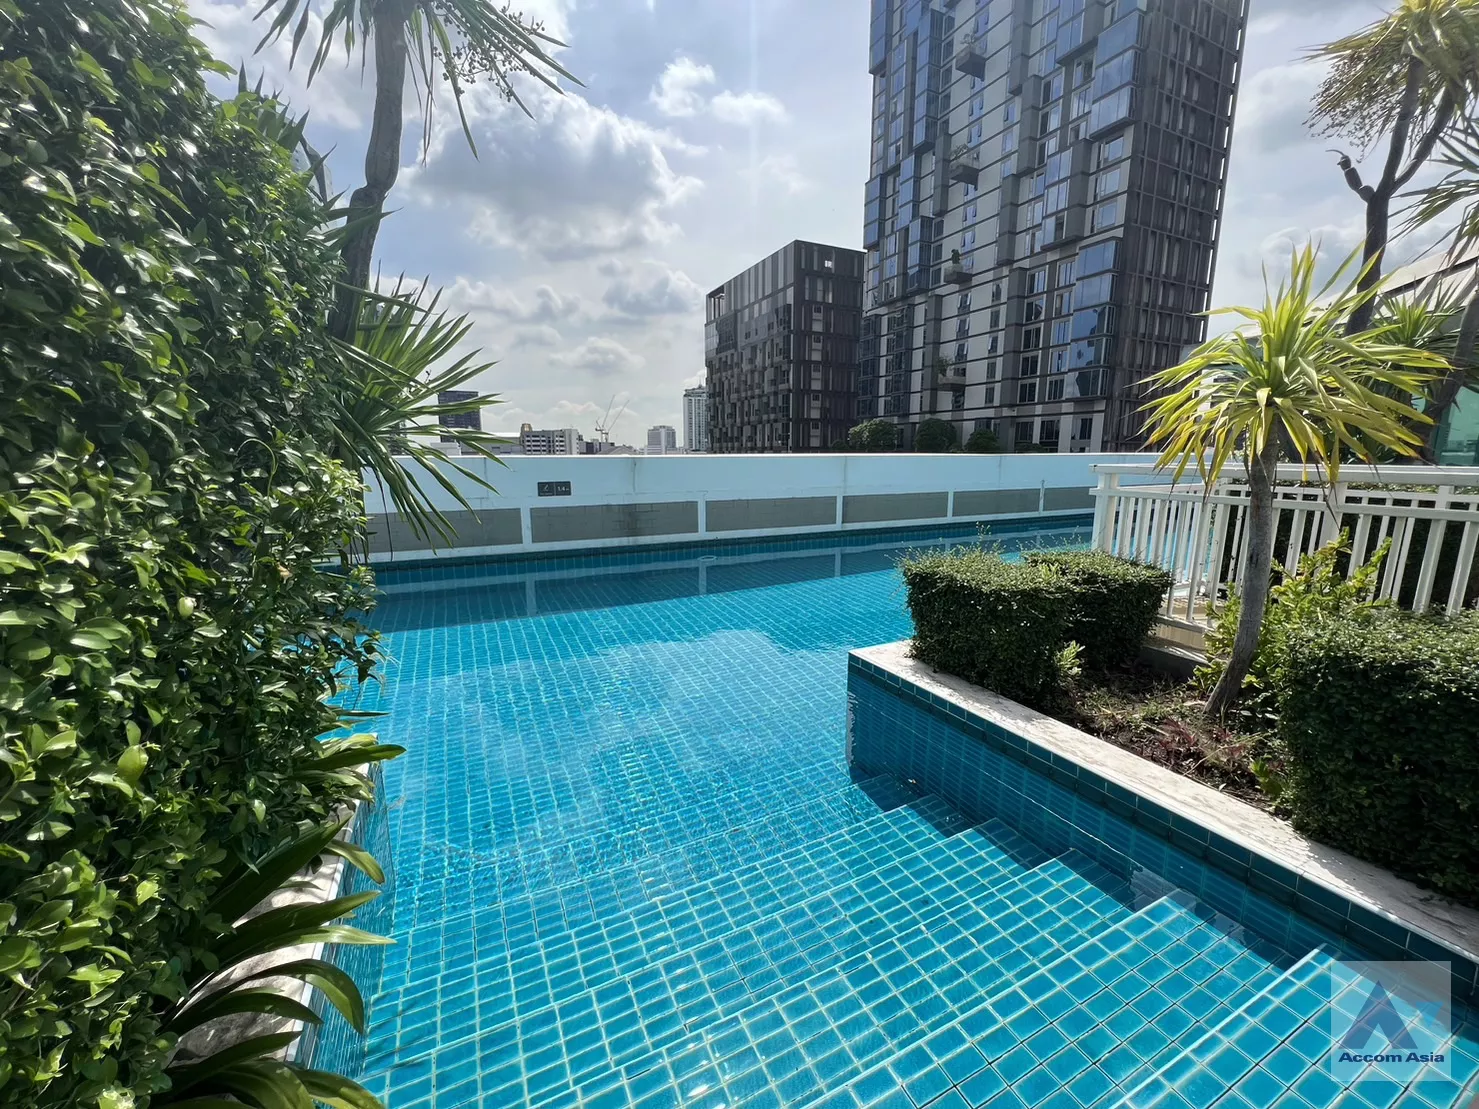 4 Plus 38 Hip - Condominium - Sukhumvit - Bangkok / Accomasia